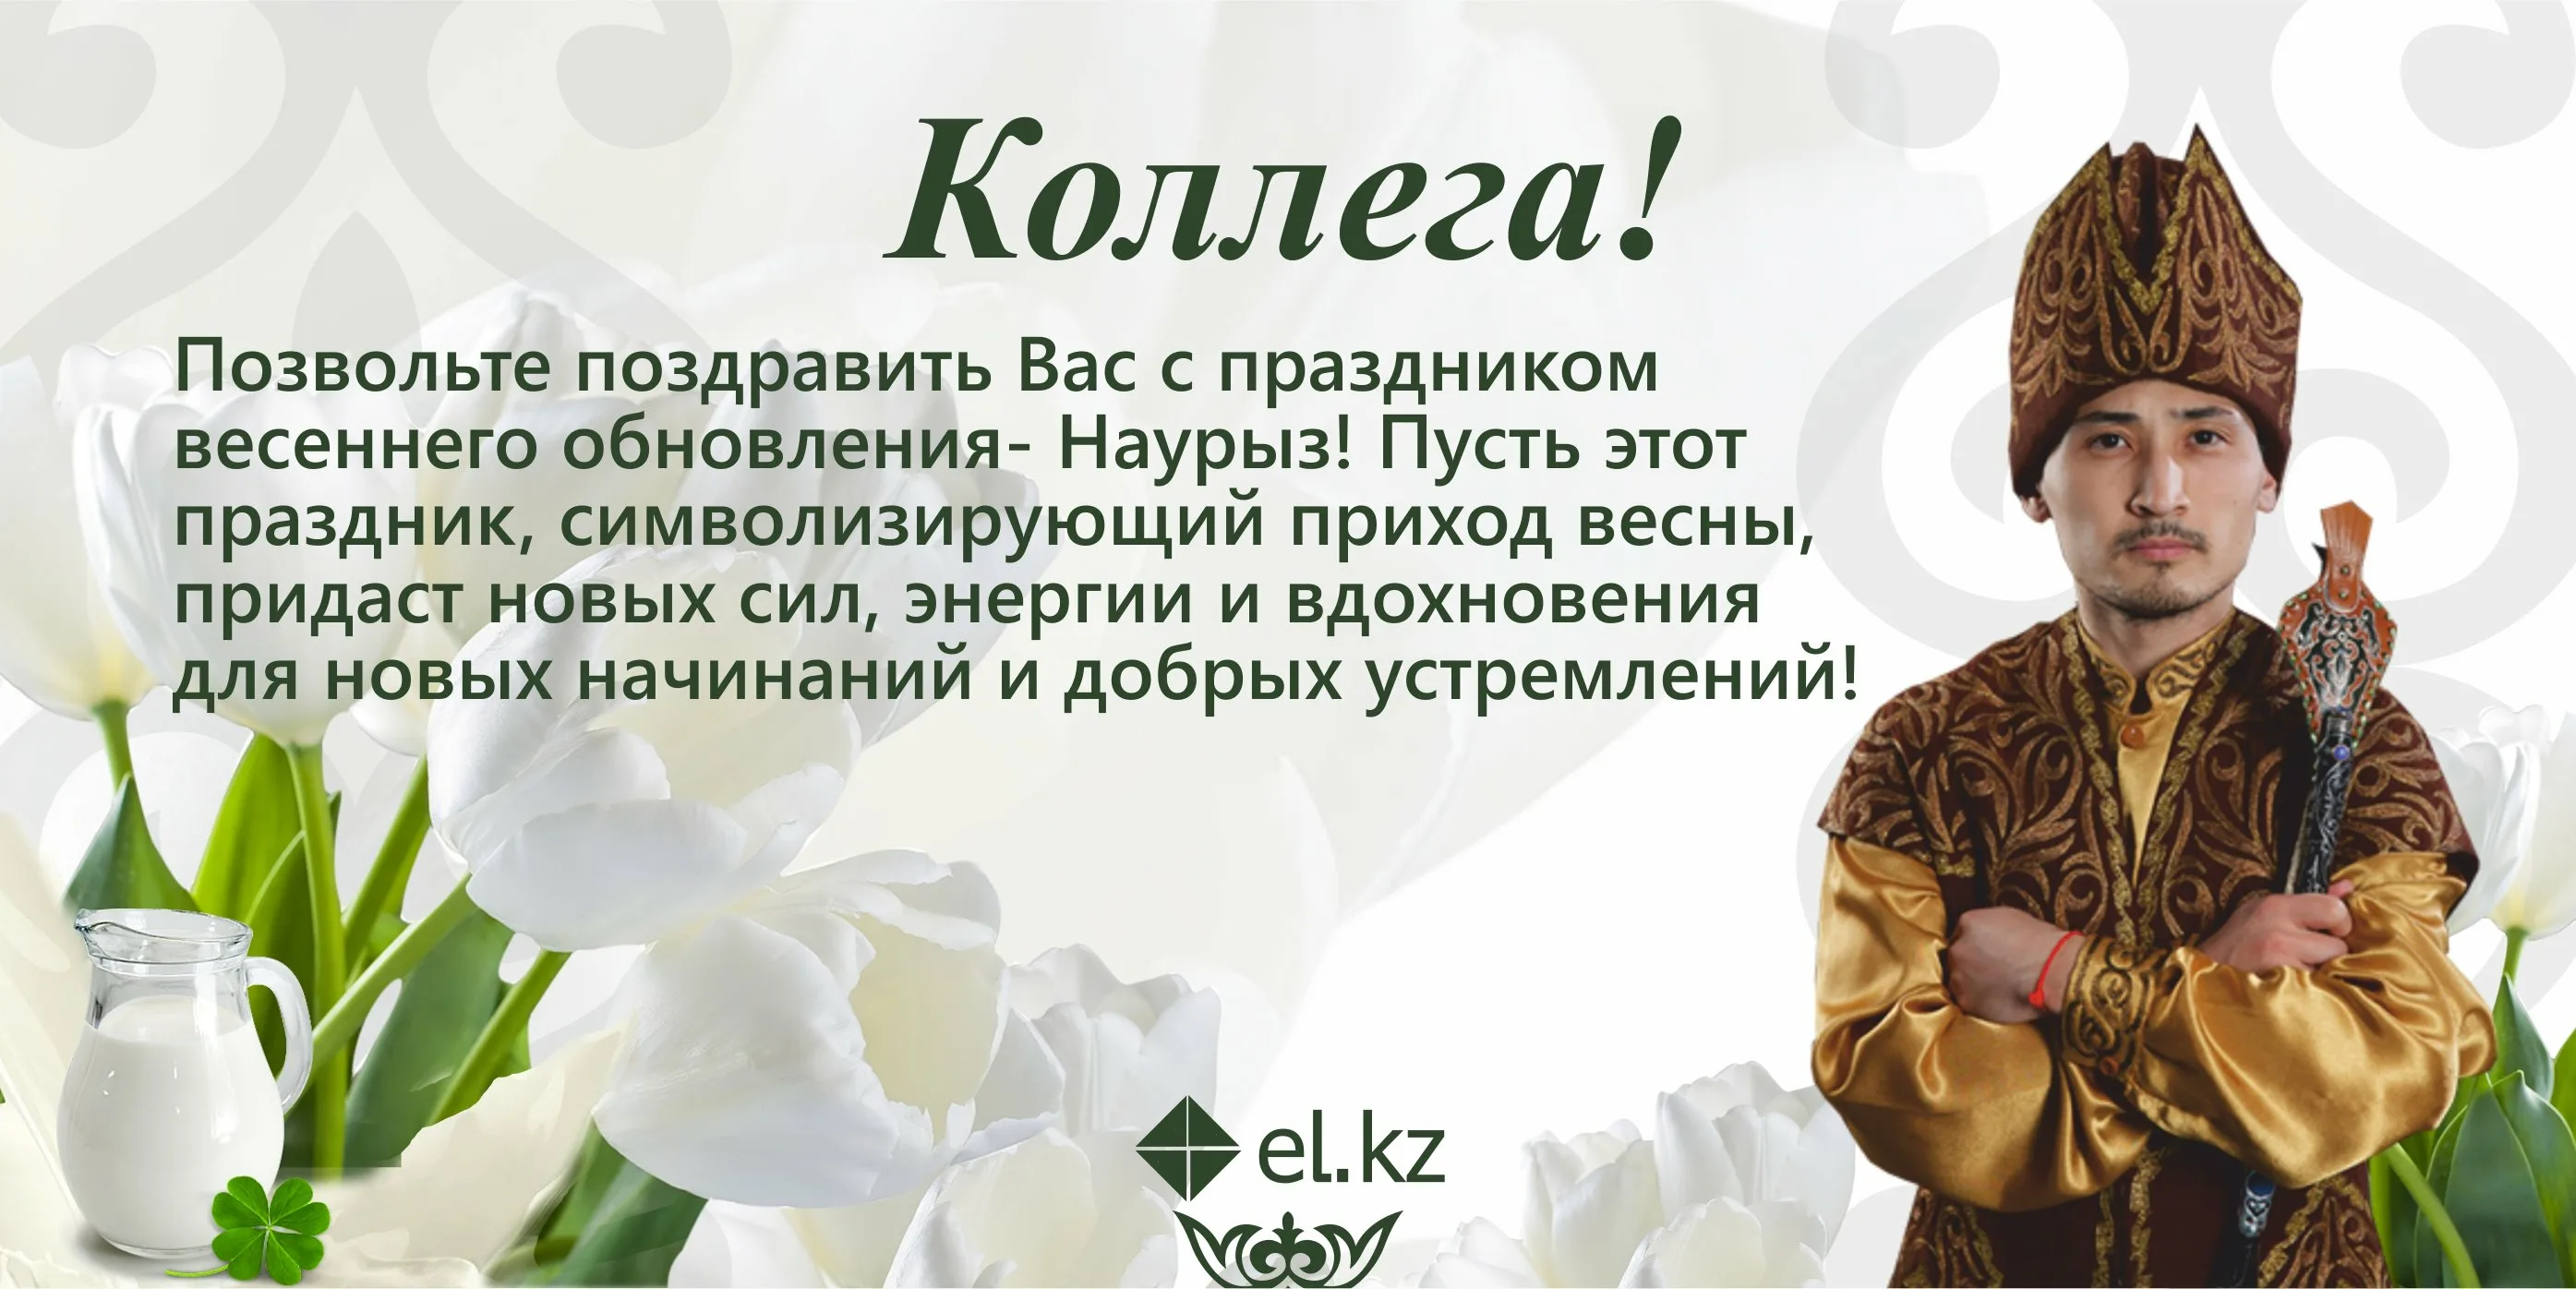 Стихотворение про наурыз. Наурыз поздравление. Поздравление на казахском. Поздравление с Наурызом на казахском. Наурыз открытки с поздравлениями на казахском языке.